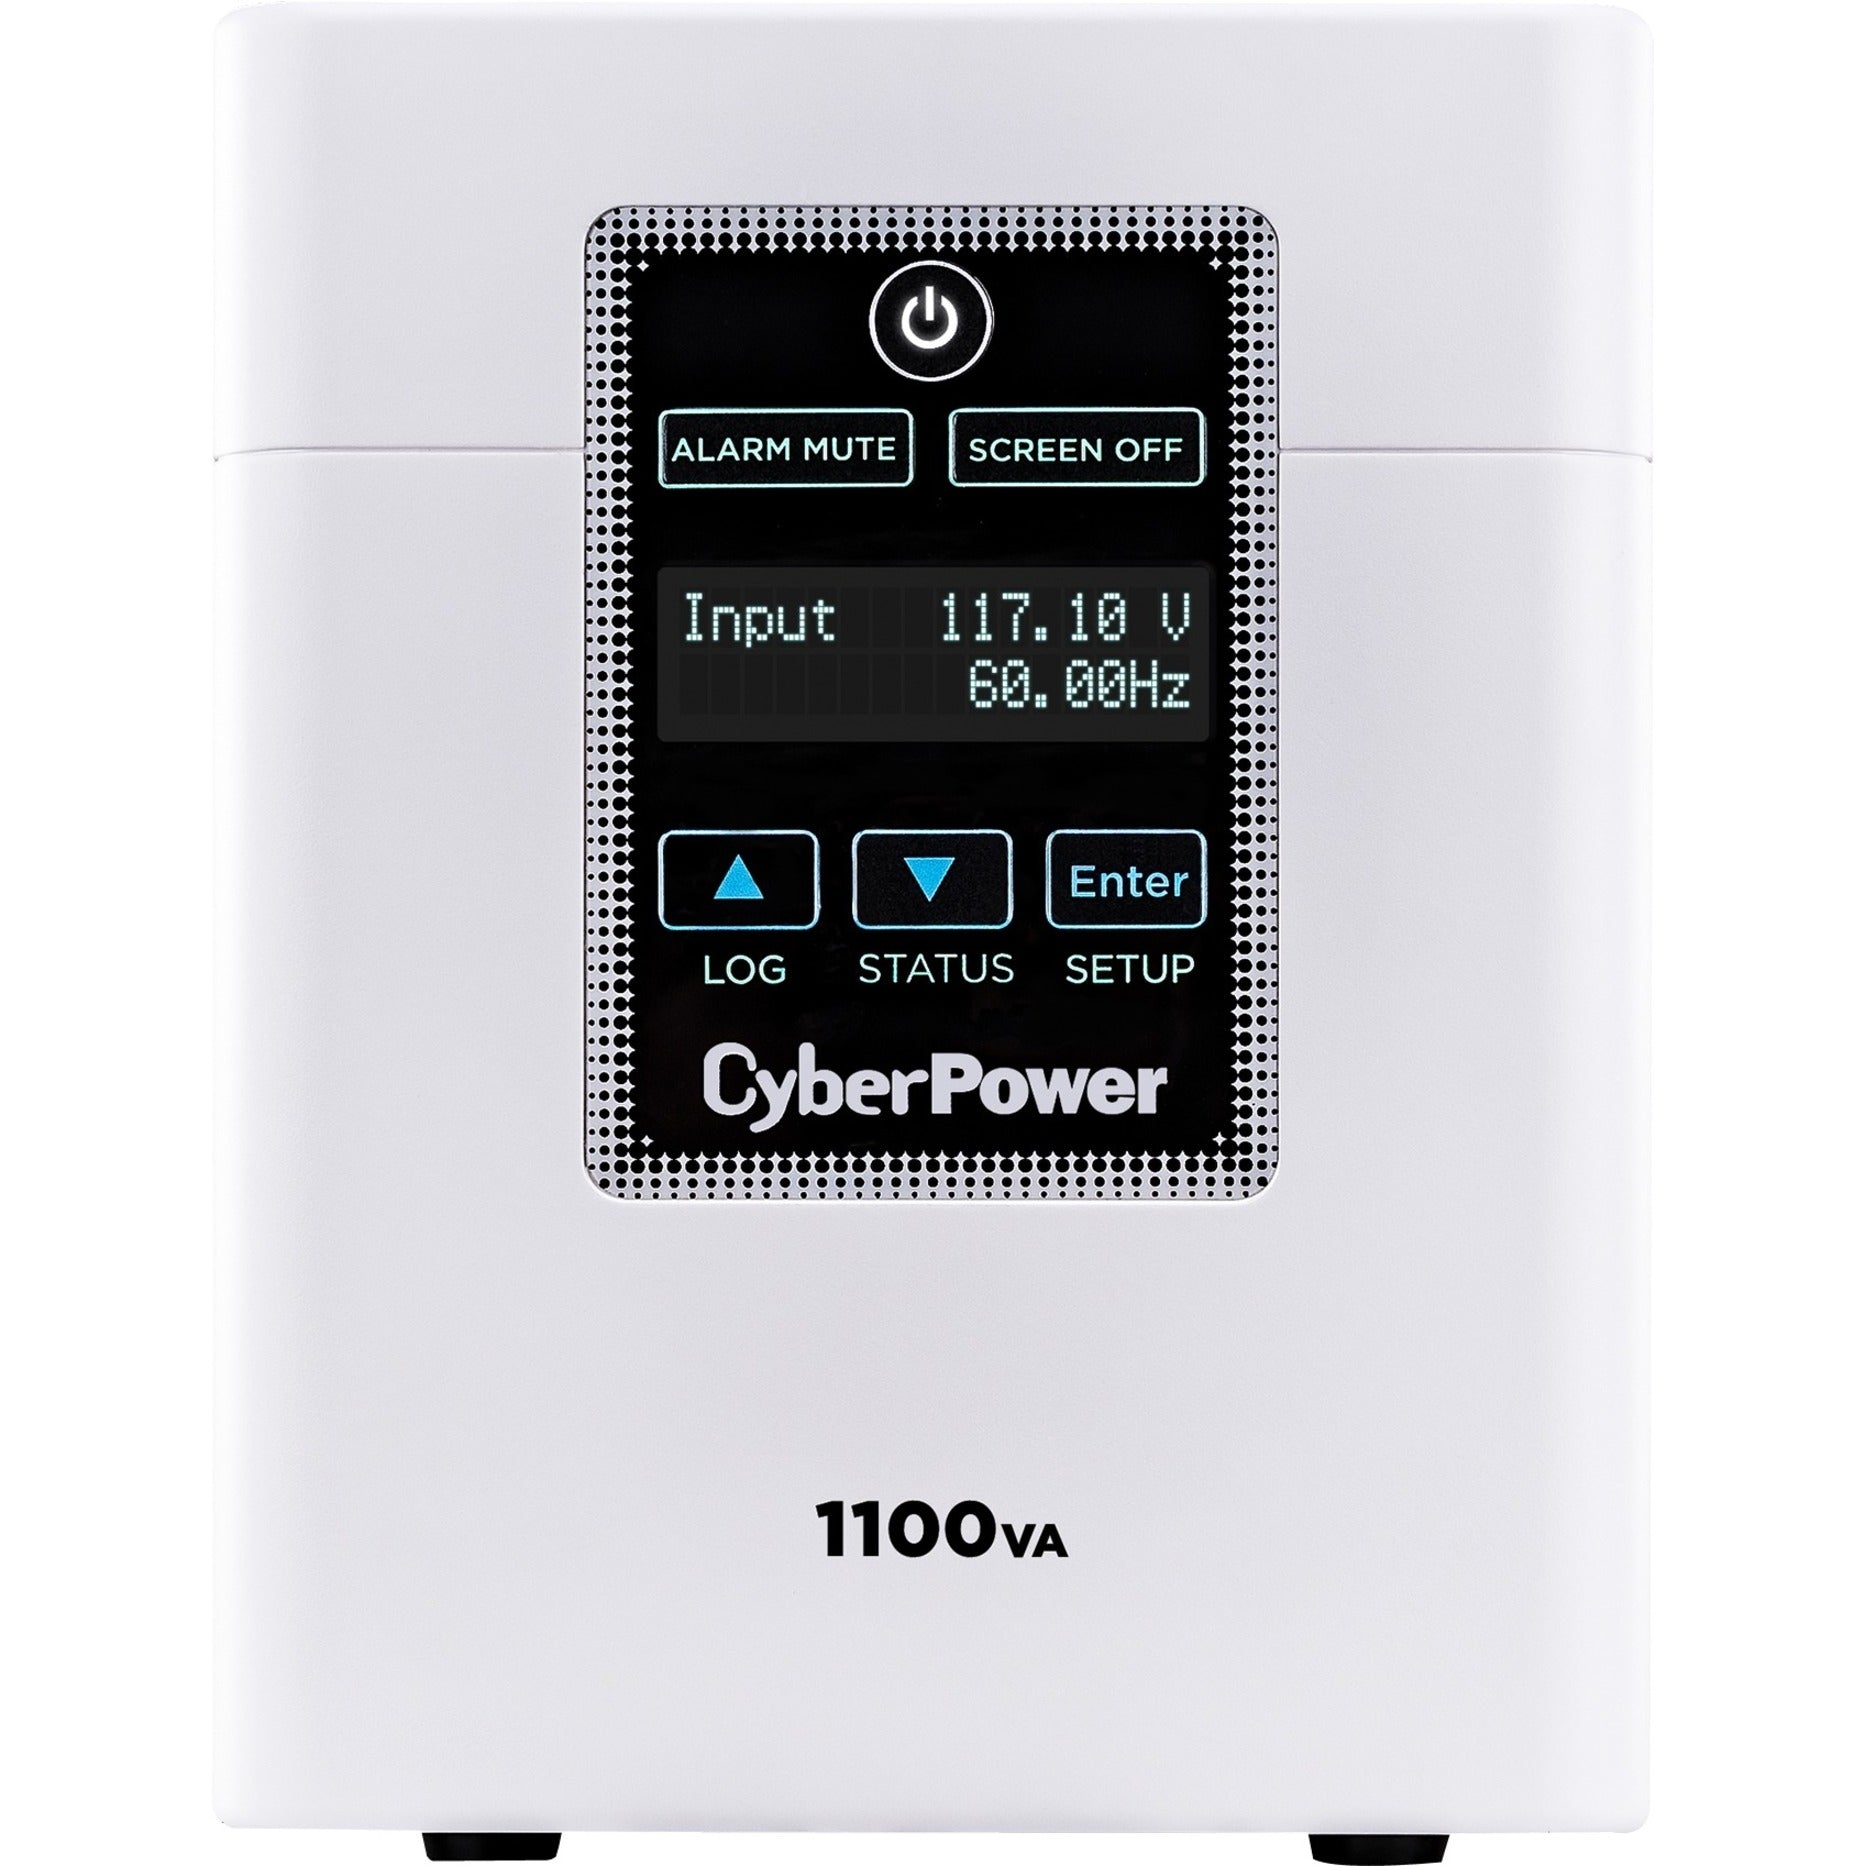 CyberPower M1100XL Fuente de alimentación ininterrumpida de grado médico 1100VA/880W Energy Star garantía de 3 años certificado RoHS. Marca: CyberPower Traducción de la marca: Poder Cibernético.